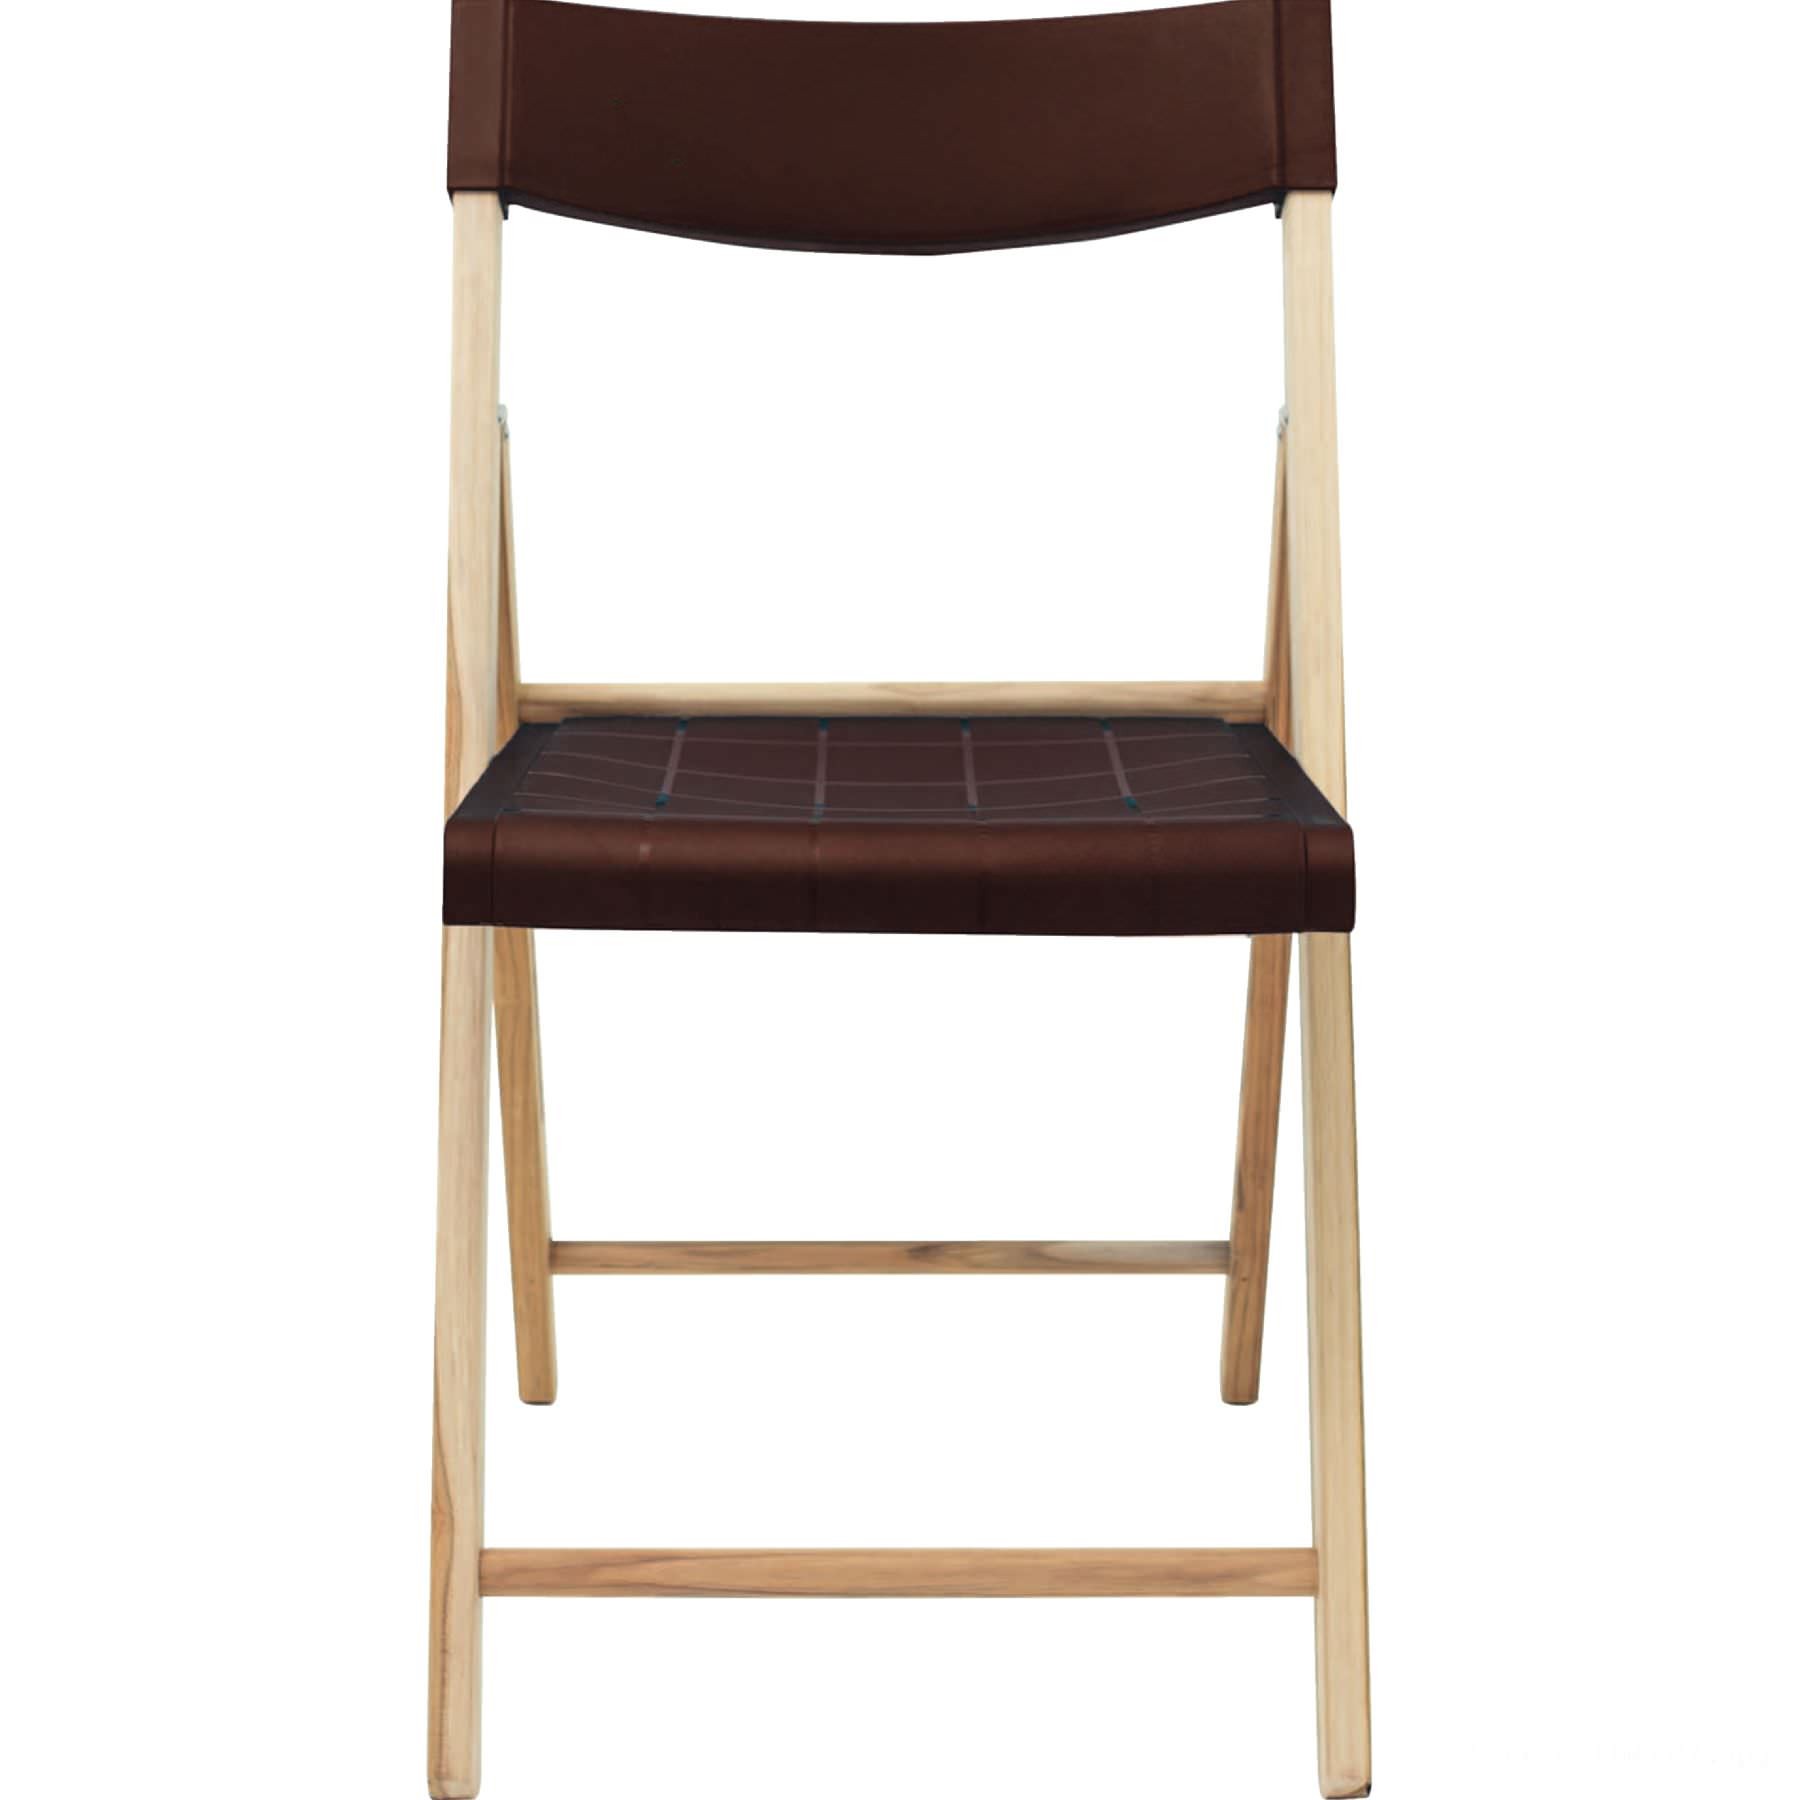 Cadeira de madeira dobrável potenza em madeira teca com acabamento natural assento e enco